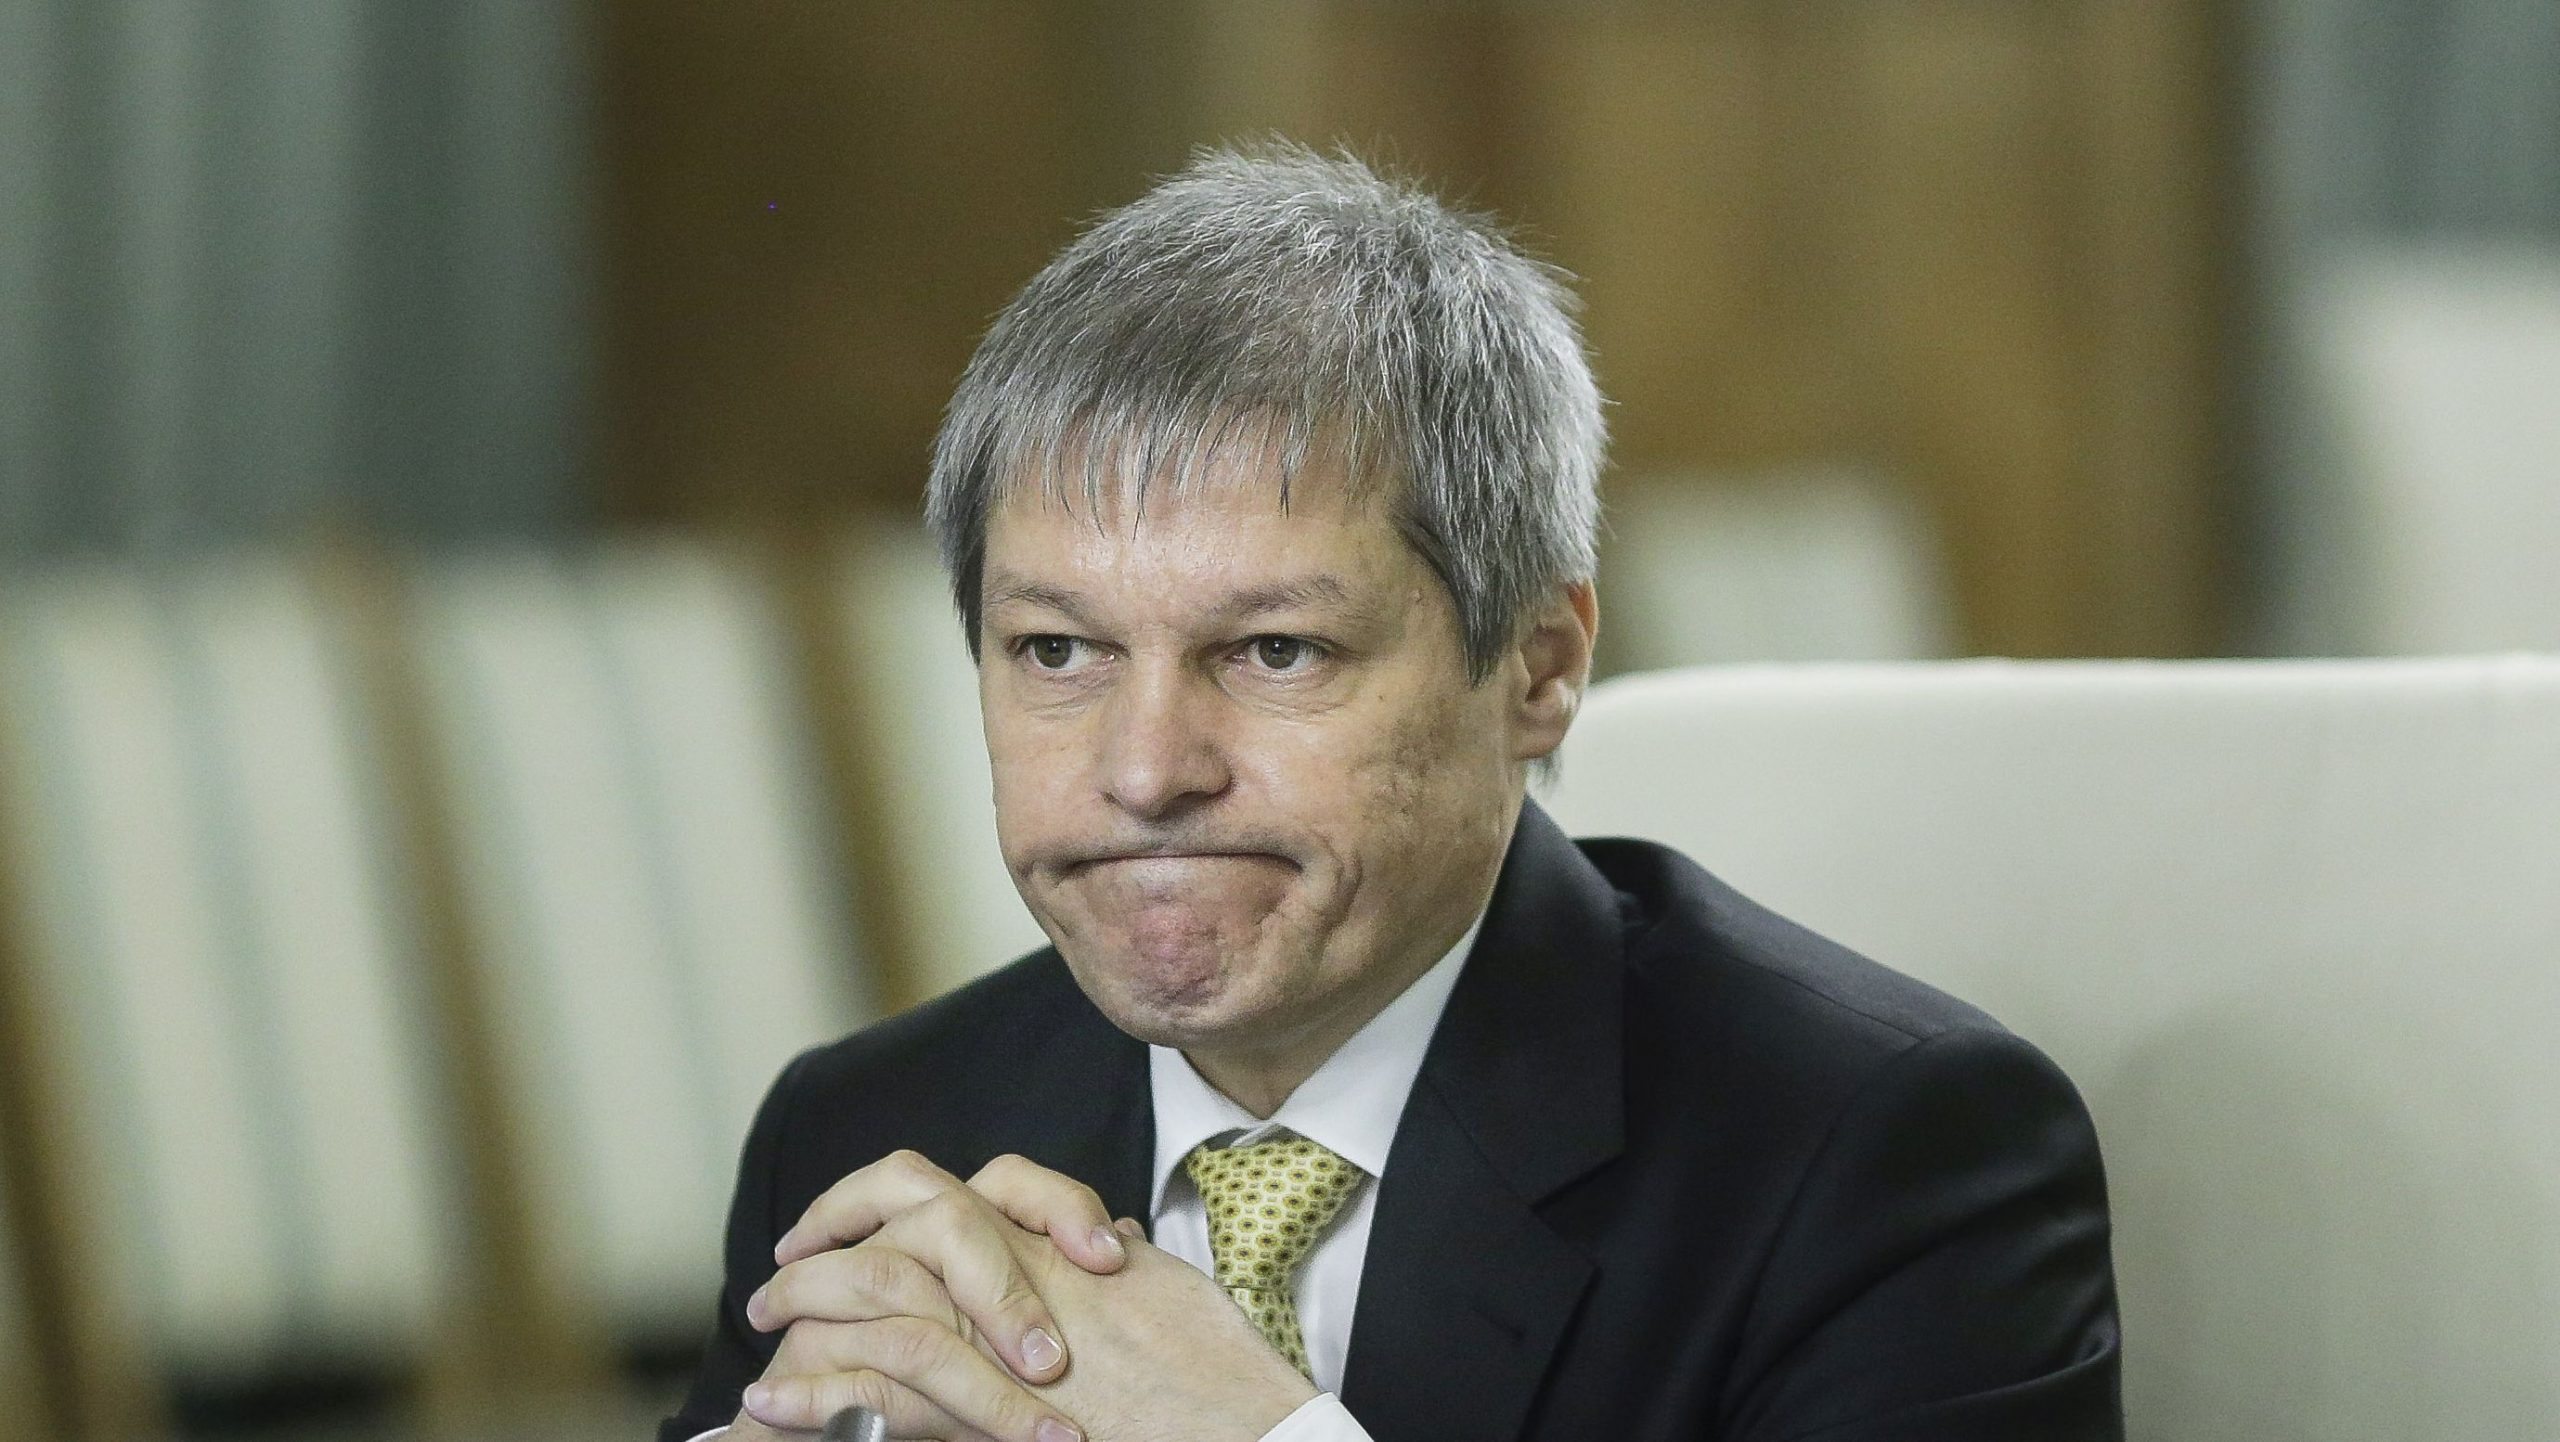 După SOS, apare partidul REPER. Șoșoacă și Cioloș vor să schimbe tabla politică